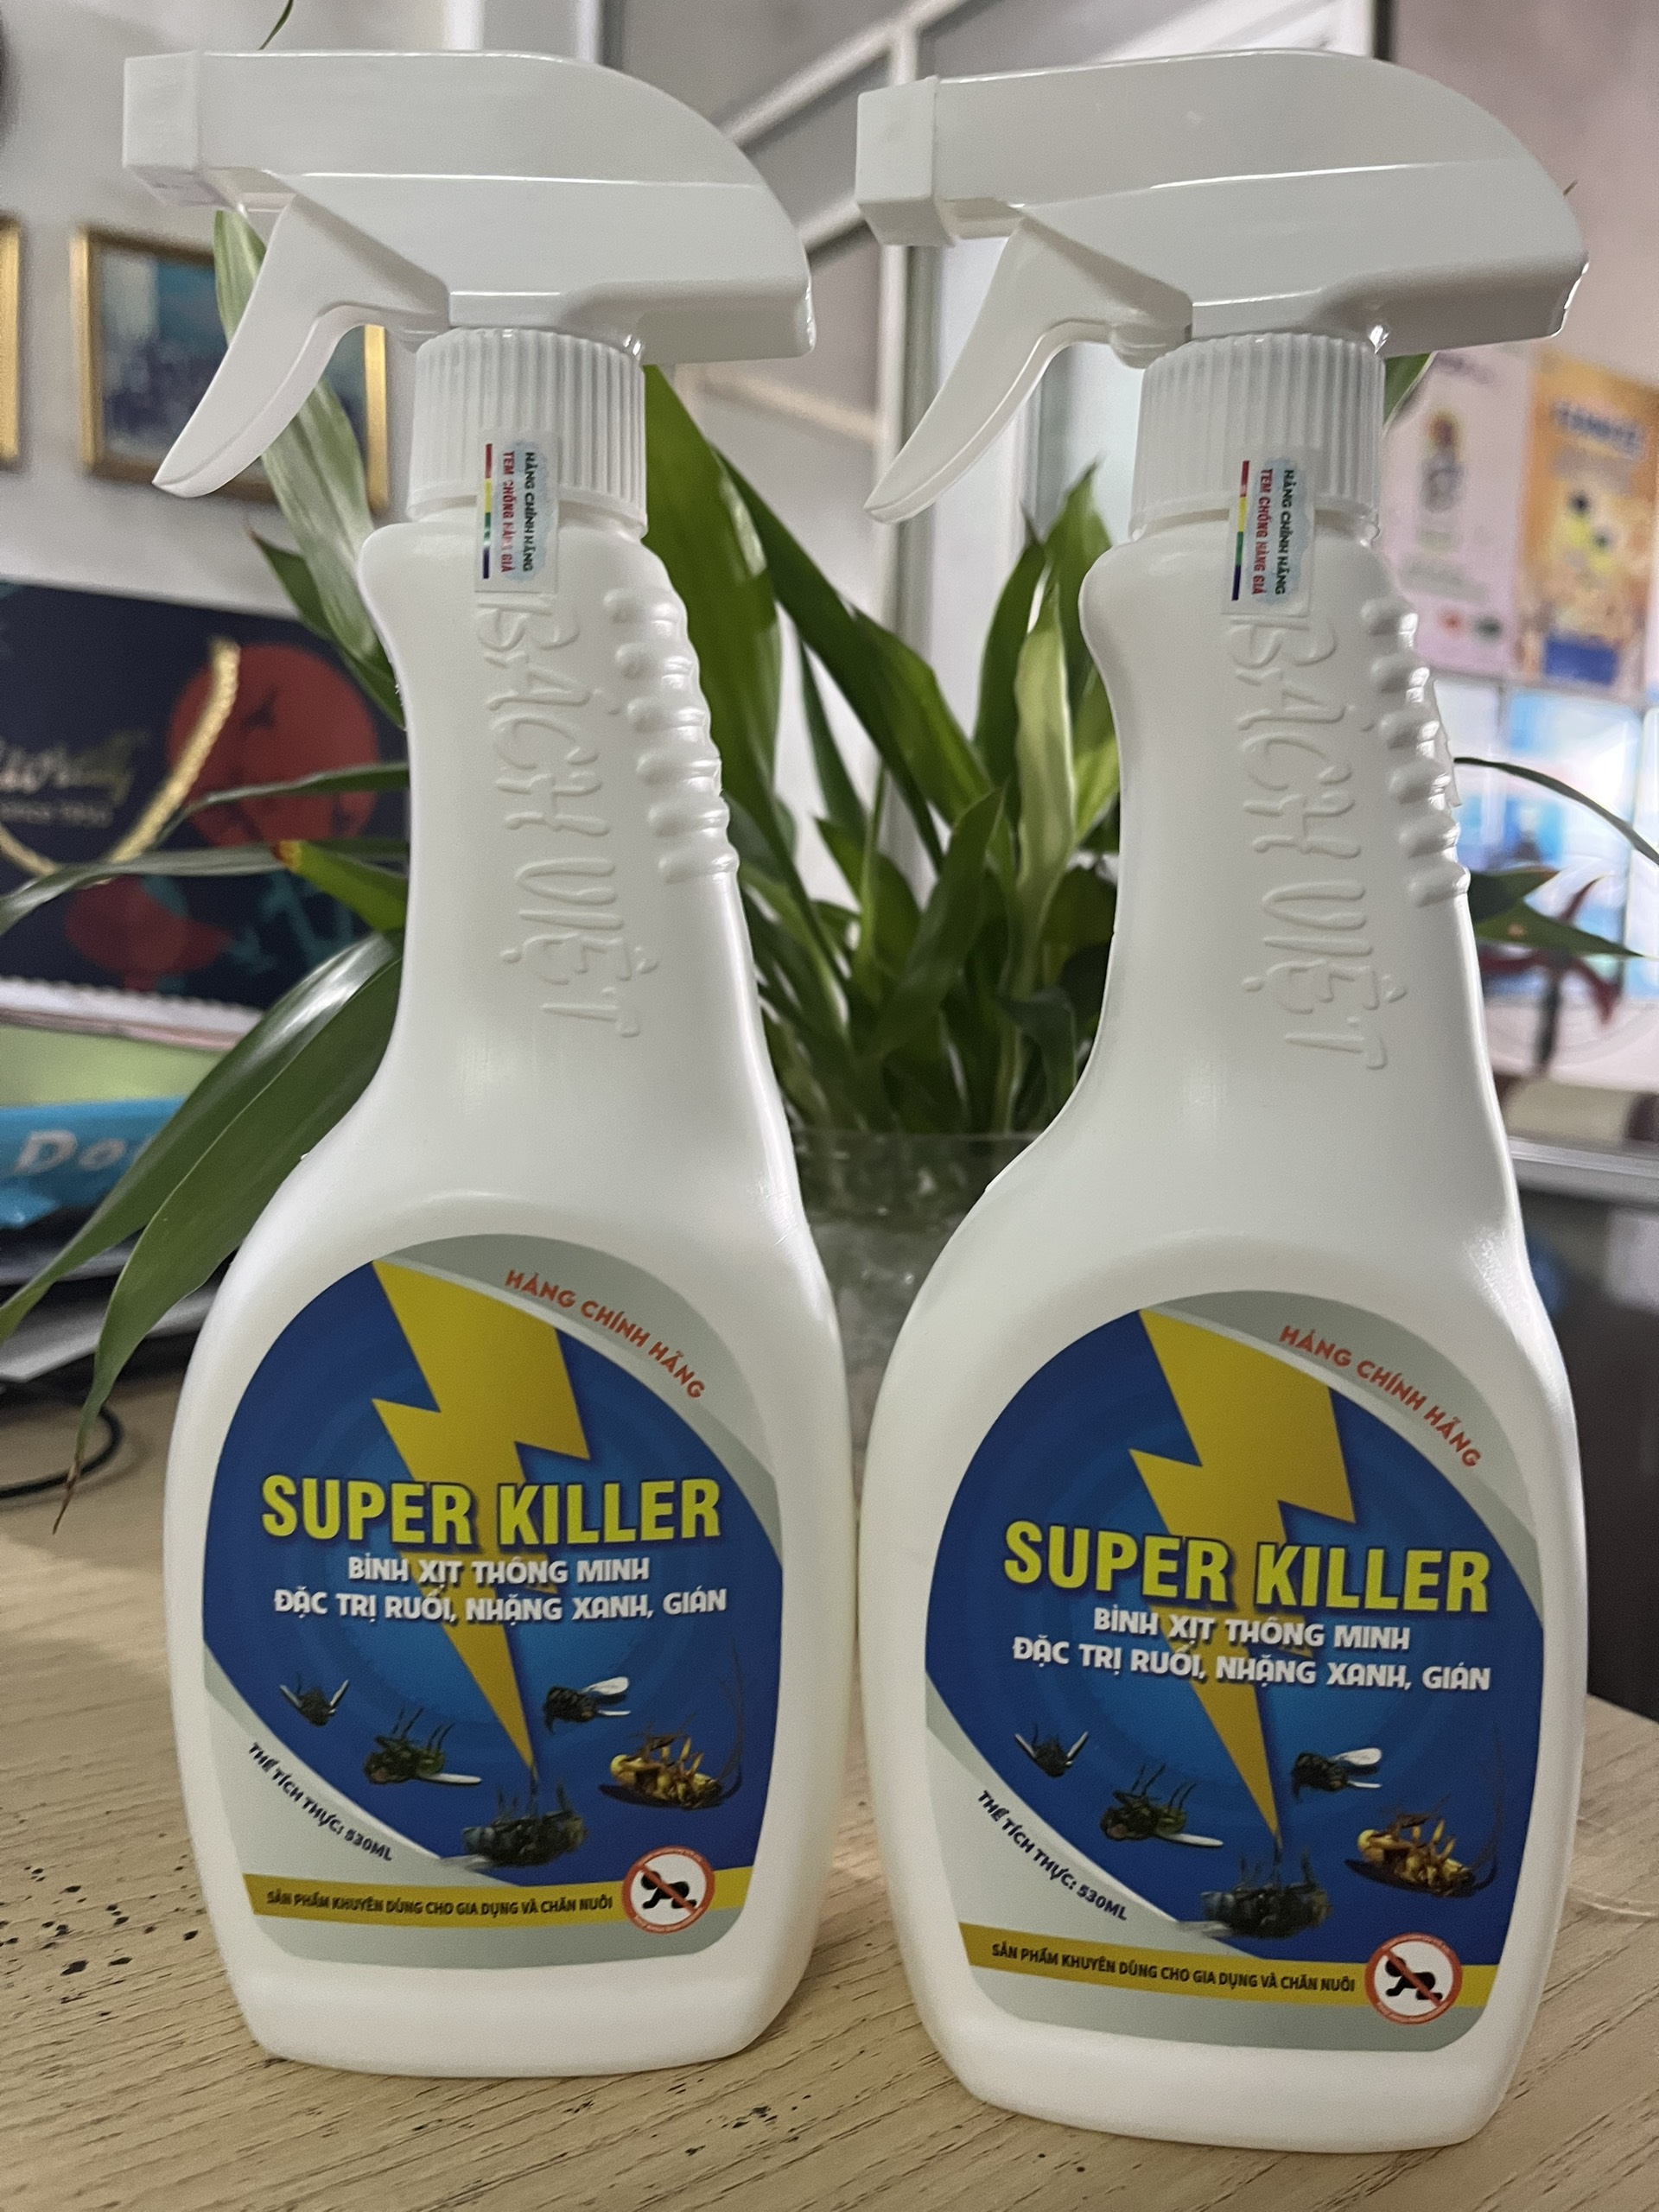 Bình xịt thông minh đặc trị ruồi, nhặng xanh, gián Super Killer 530 ml